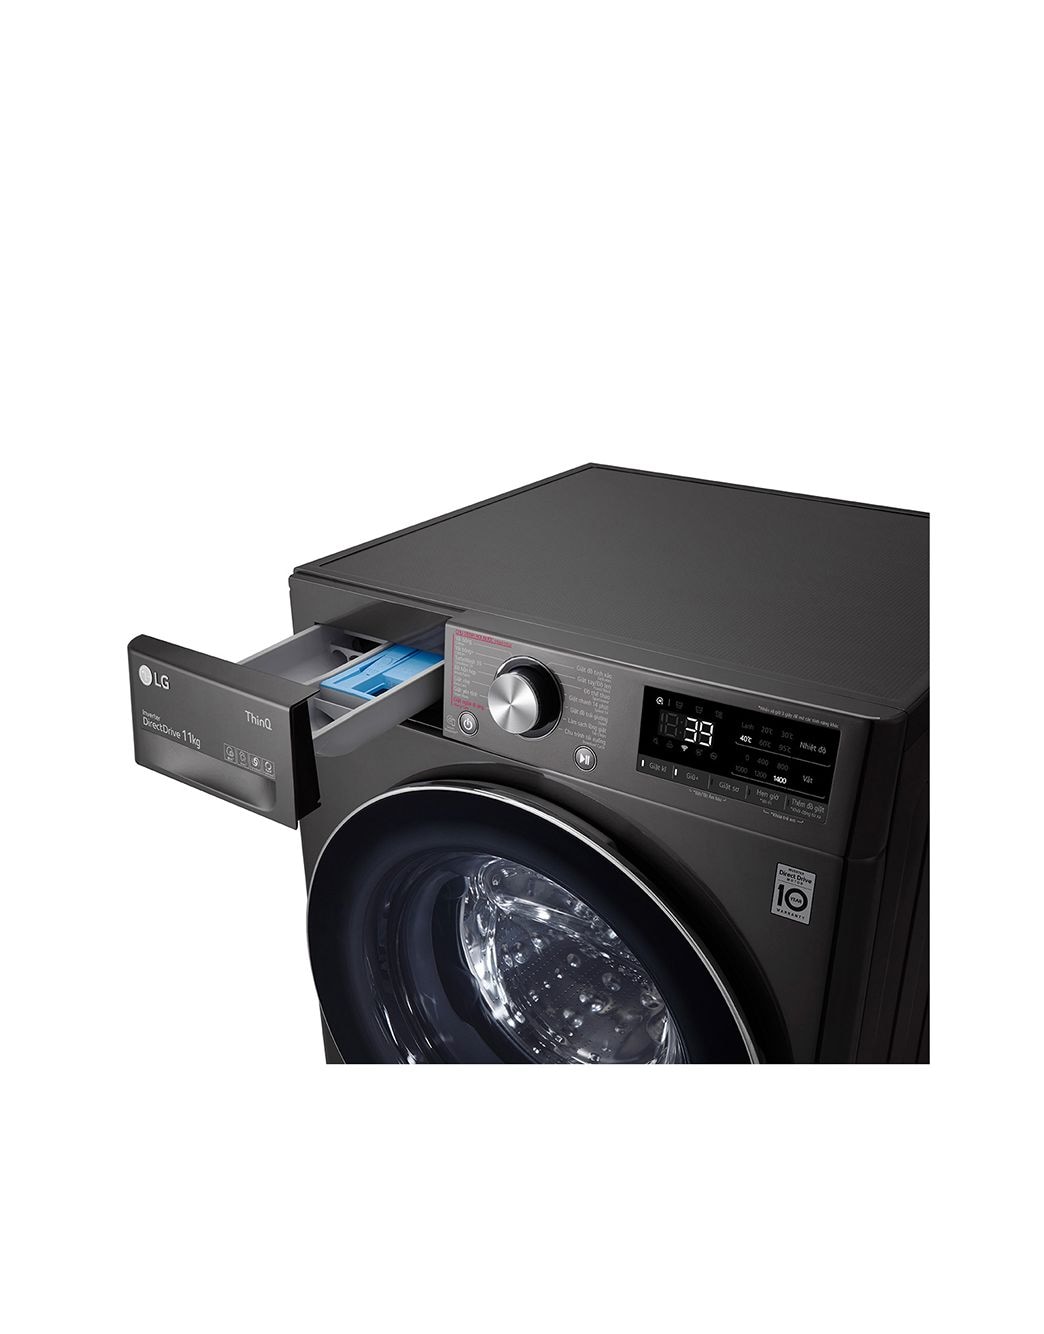 Máy giặt lồng ngang LG: Hãy xem hình ảnh về máy giặt lồng ngang LG để khám phá công nghệ giặt đột phá, tiết kiệm thời gian và công sức. Bạn sẽ bất ngờ với khả năng giặt sạch và làm mềm vải chỉ với một lần giặt.